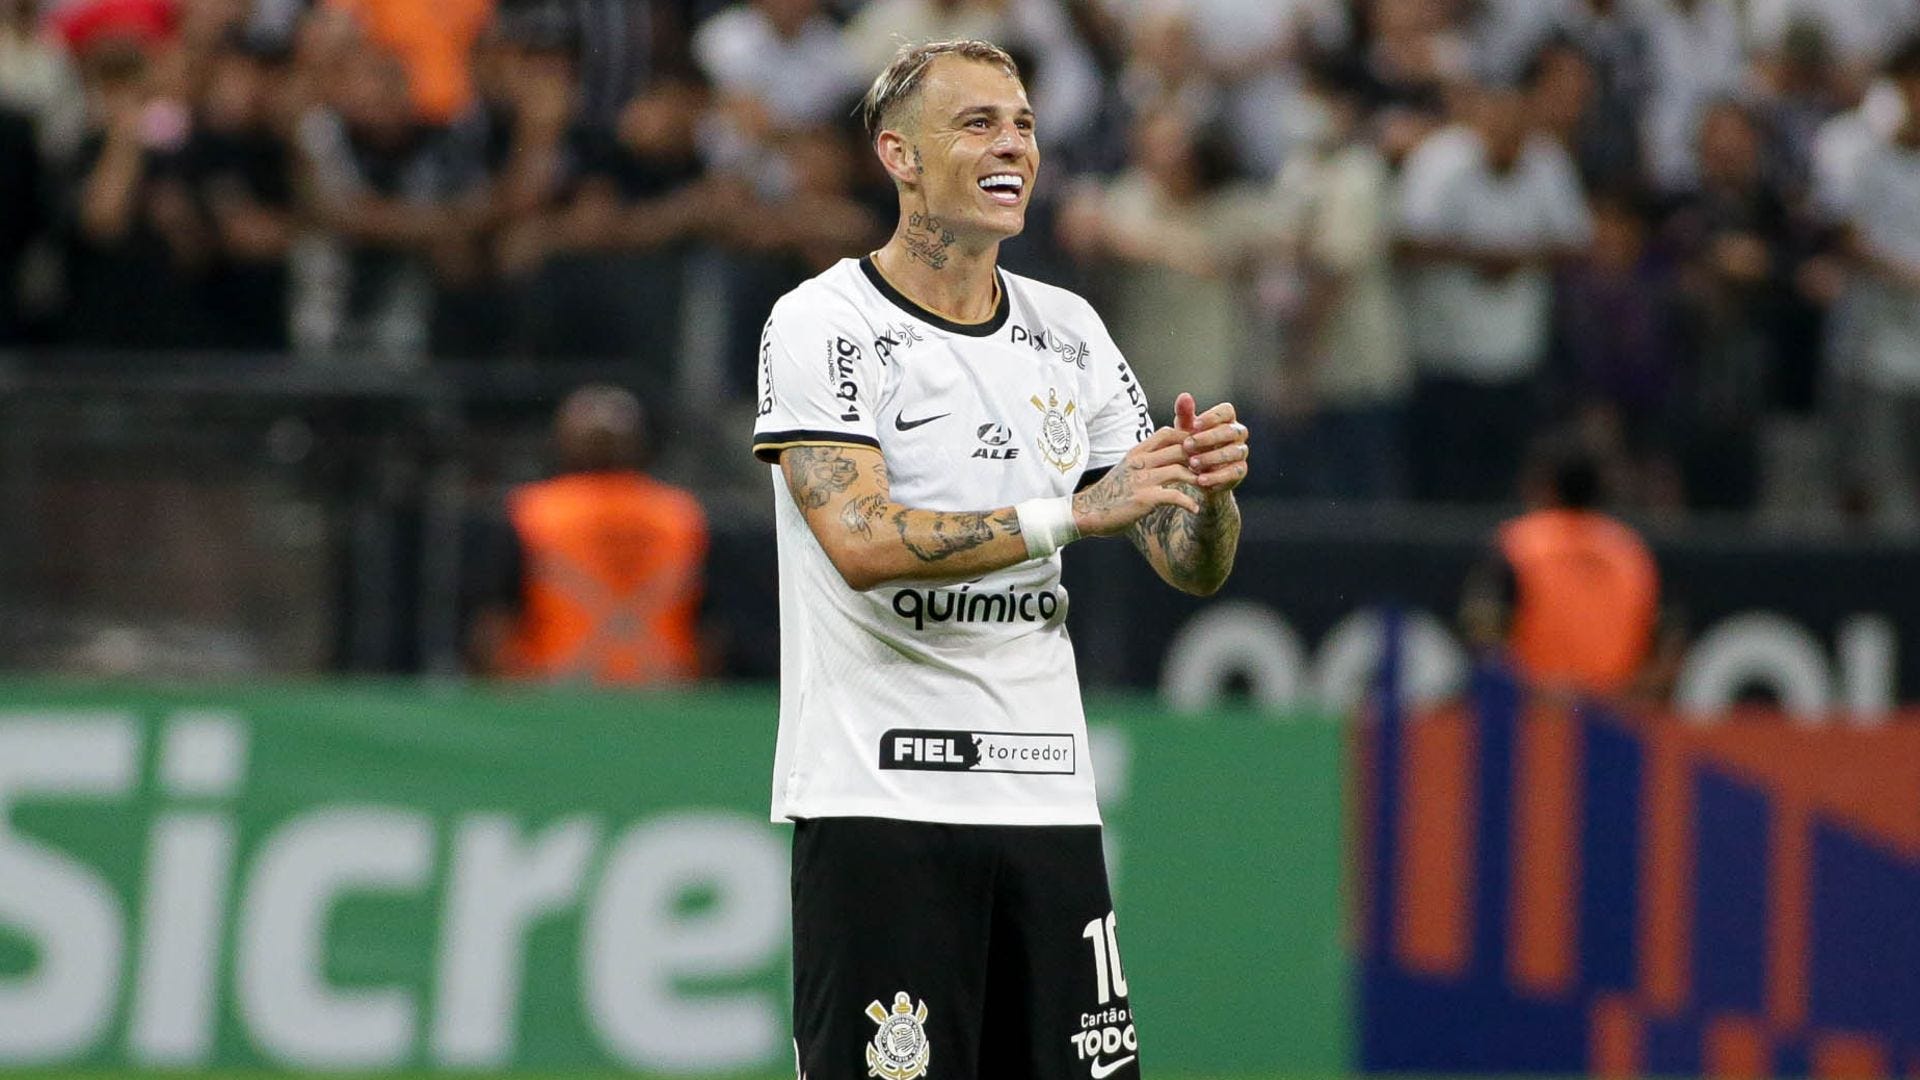 Próximos jogos do Corinthians vai de Libertadores a Brasileirão